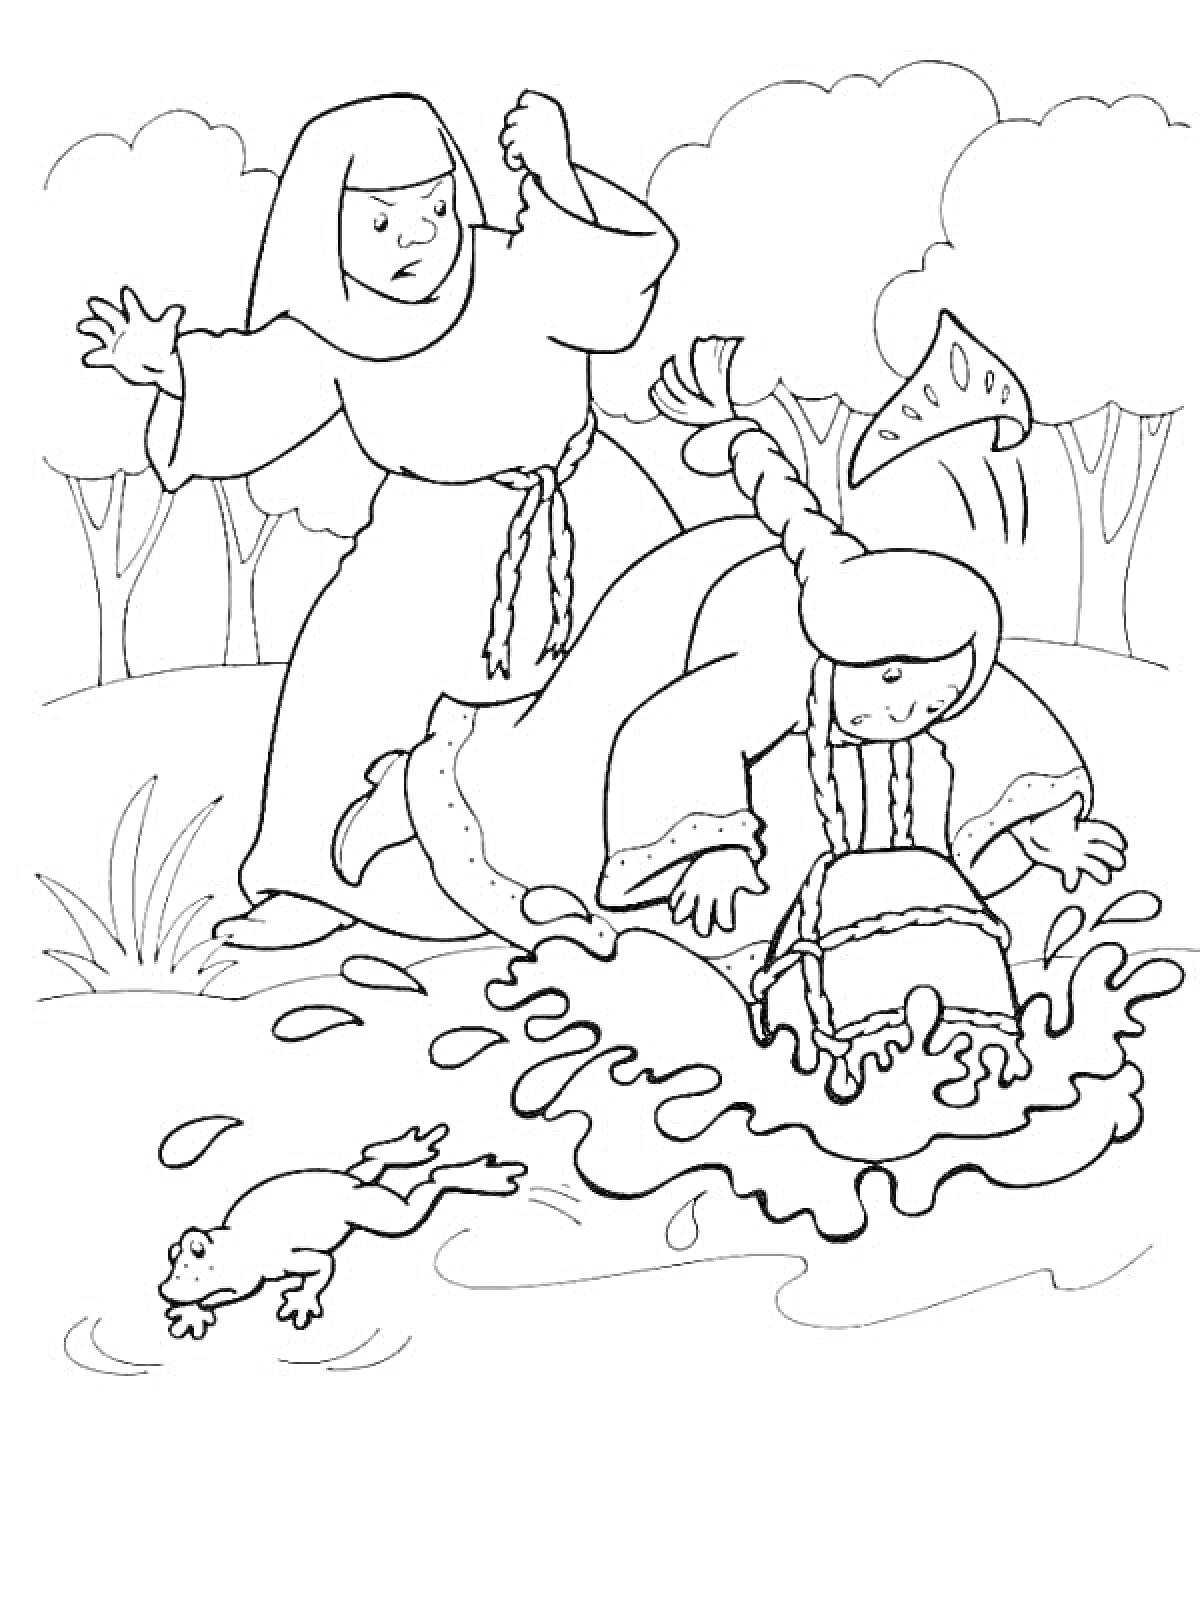 Раскраска Сестрица Аленушка и братец Иванушка у пруда с лягушкой